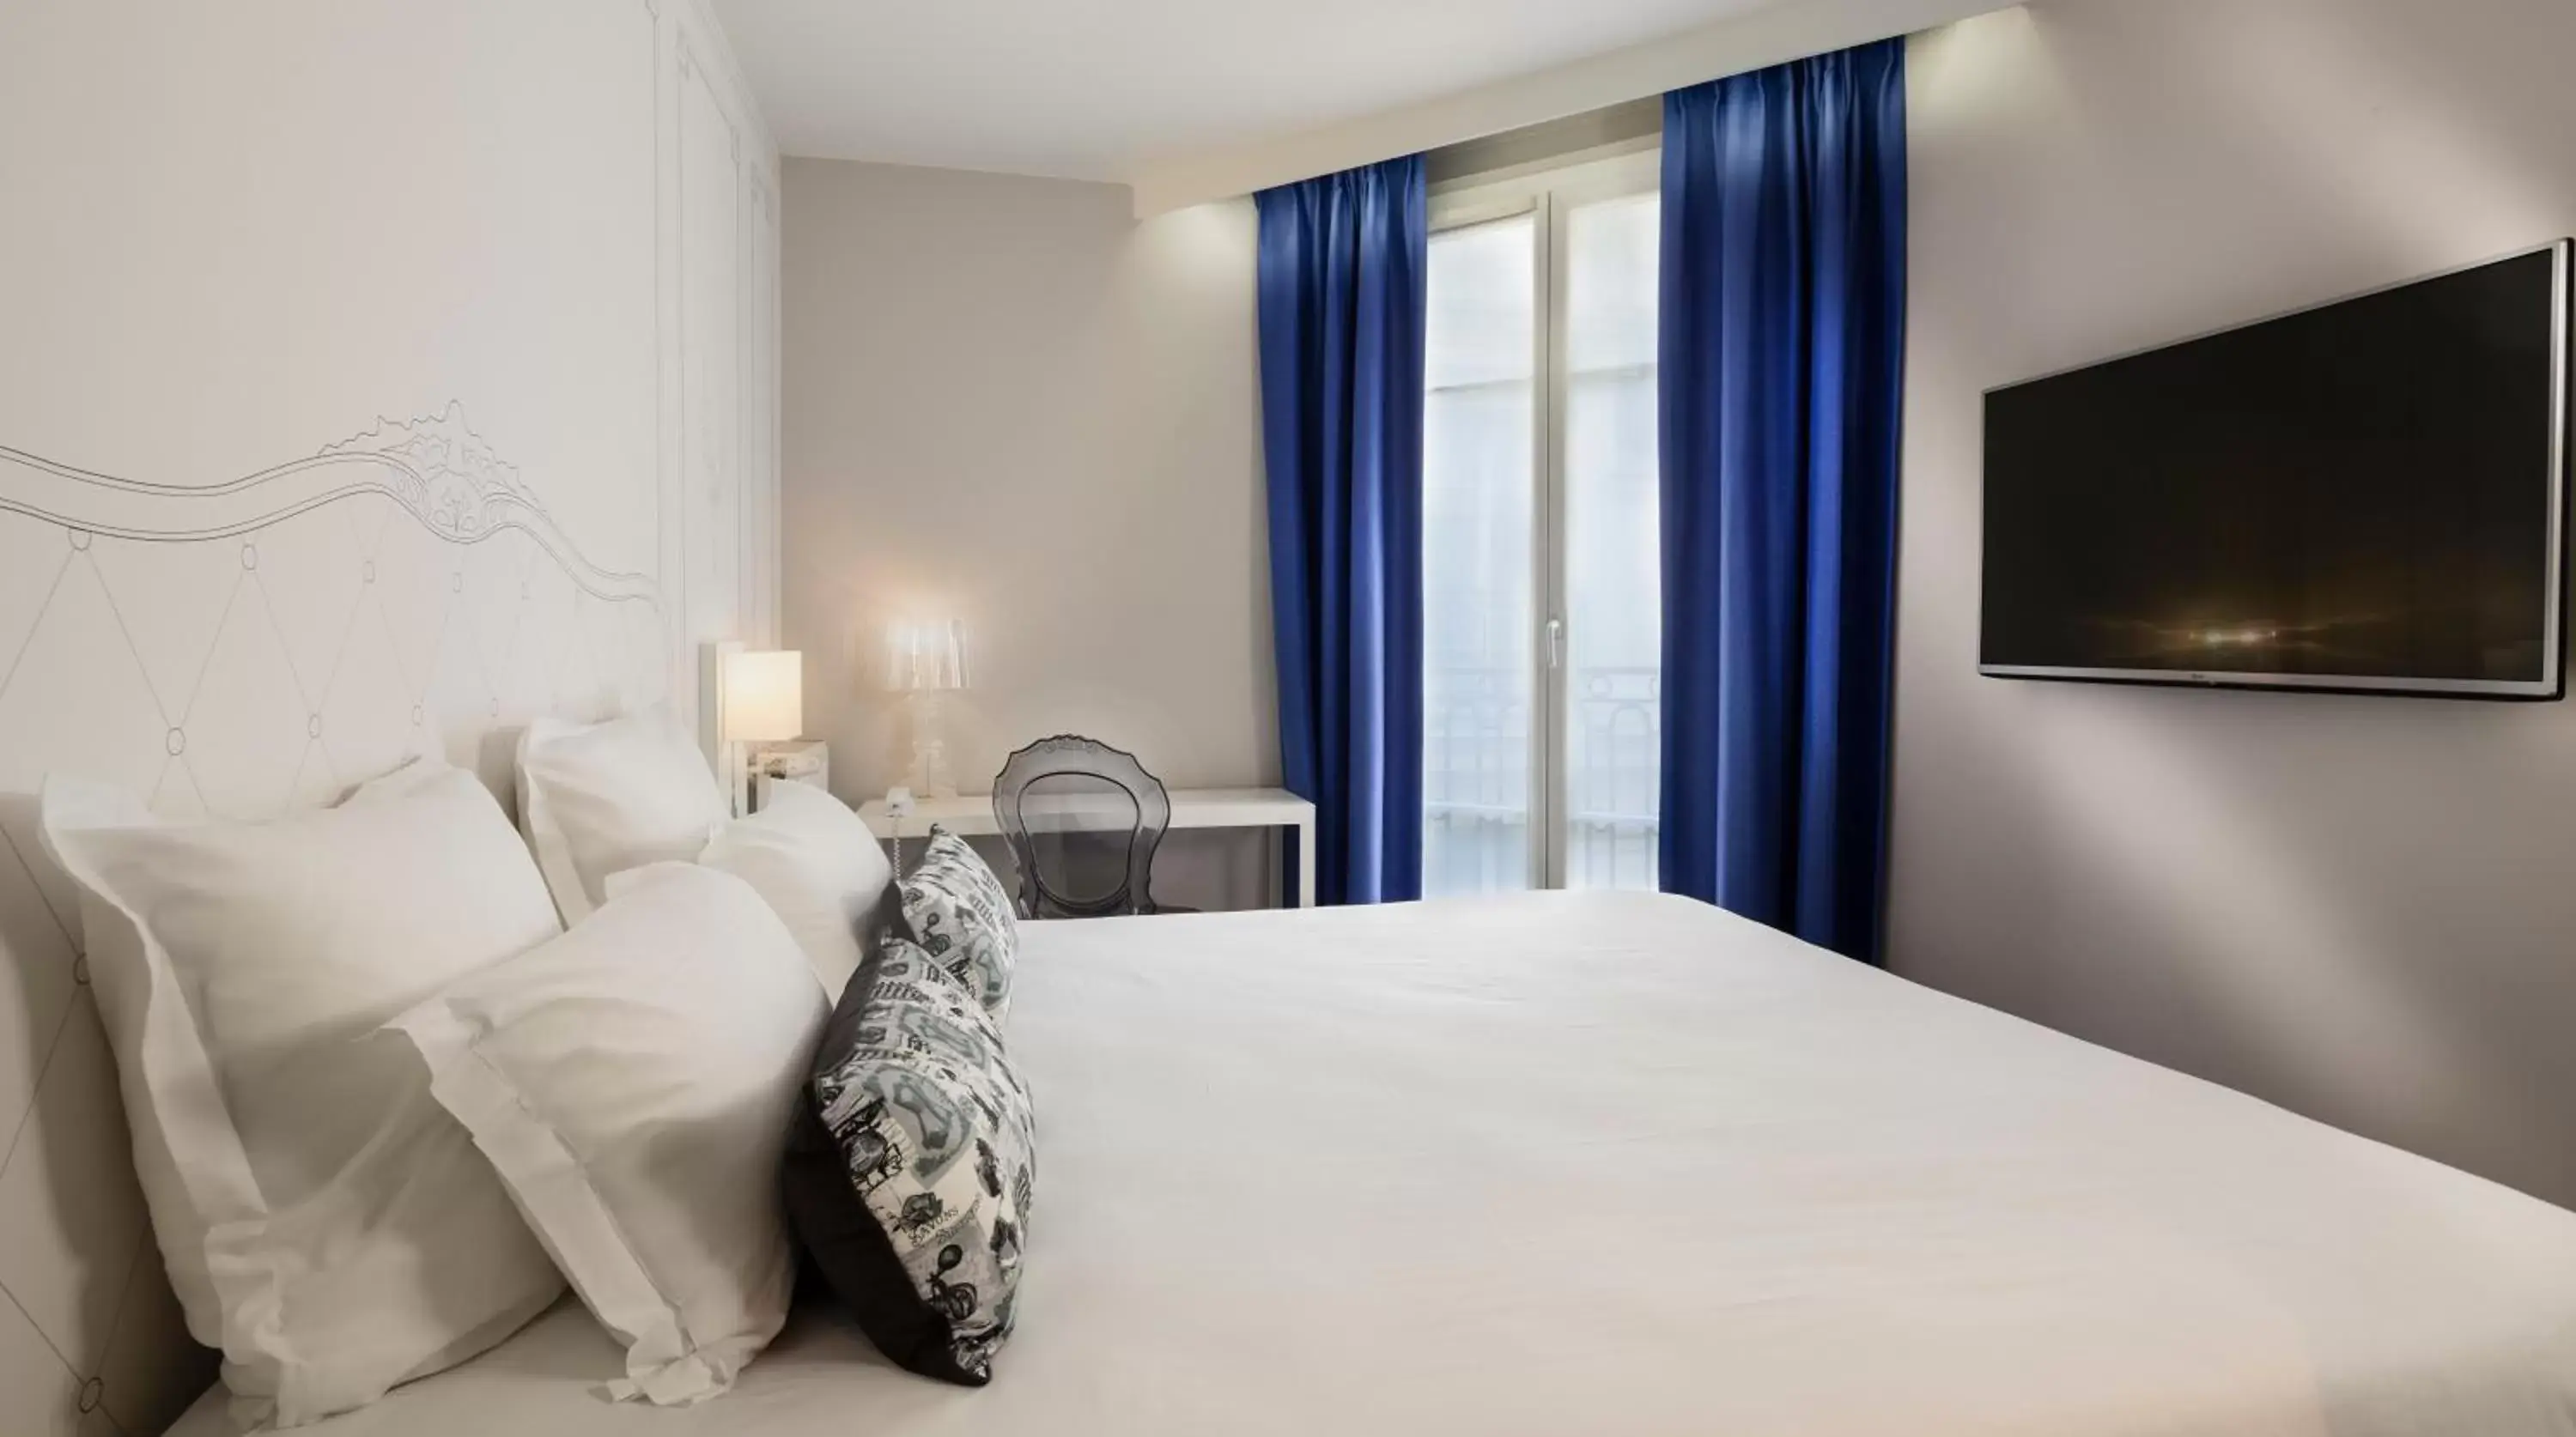 Bedroom, Room Photo in Hôtel Paris Vaugirard